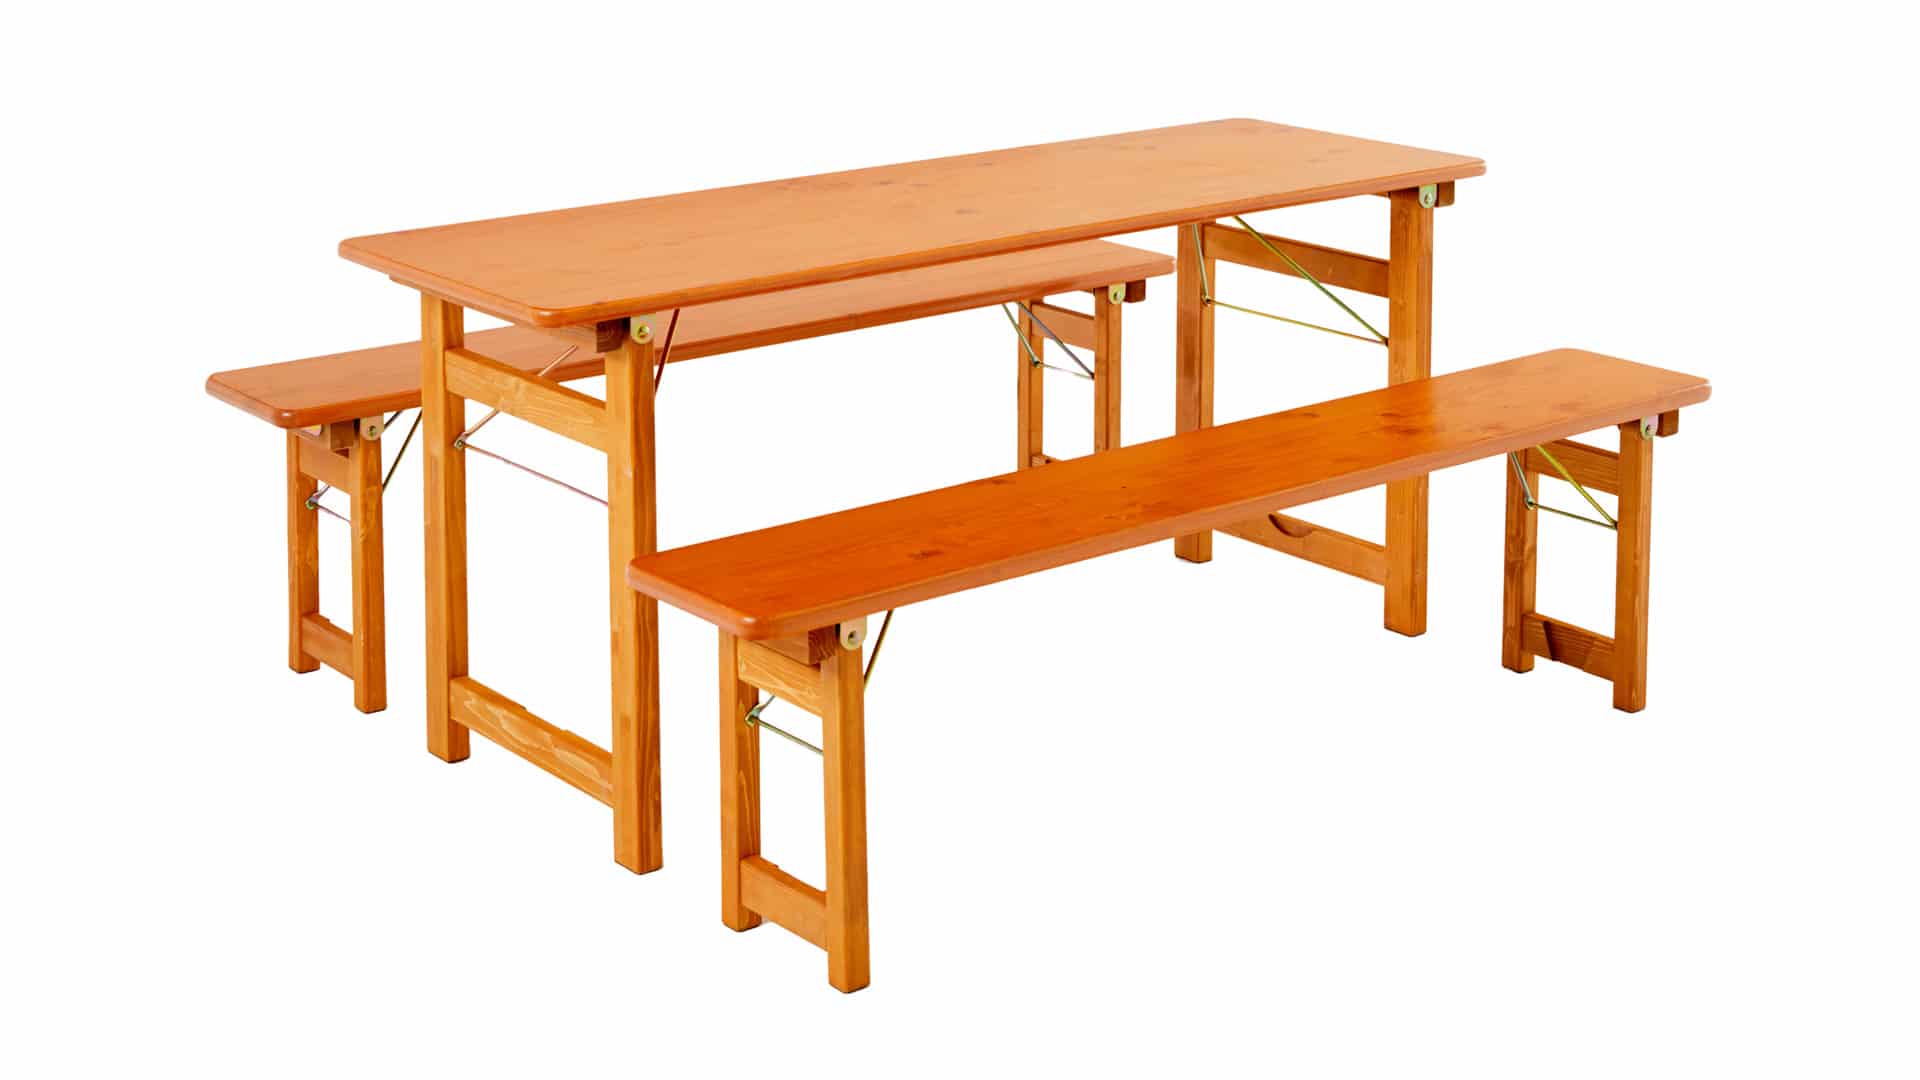 Die Designgarnitur Rustica bestehend aus Tisch und zwei Bänken ohne Lehne.